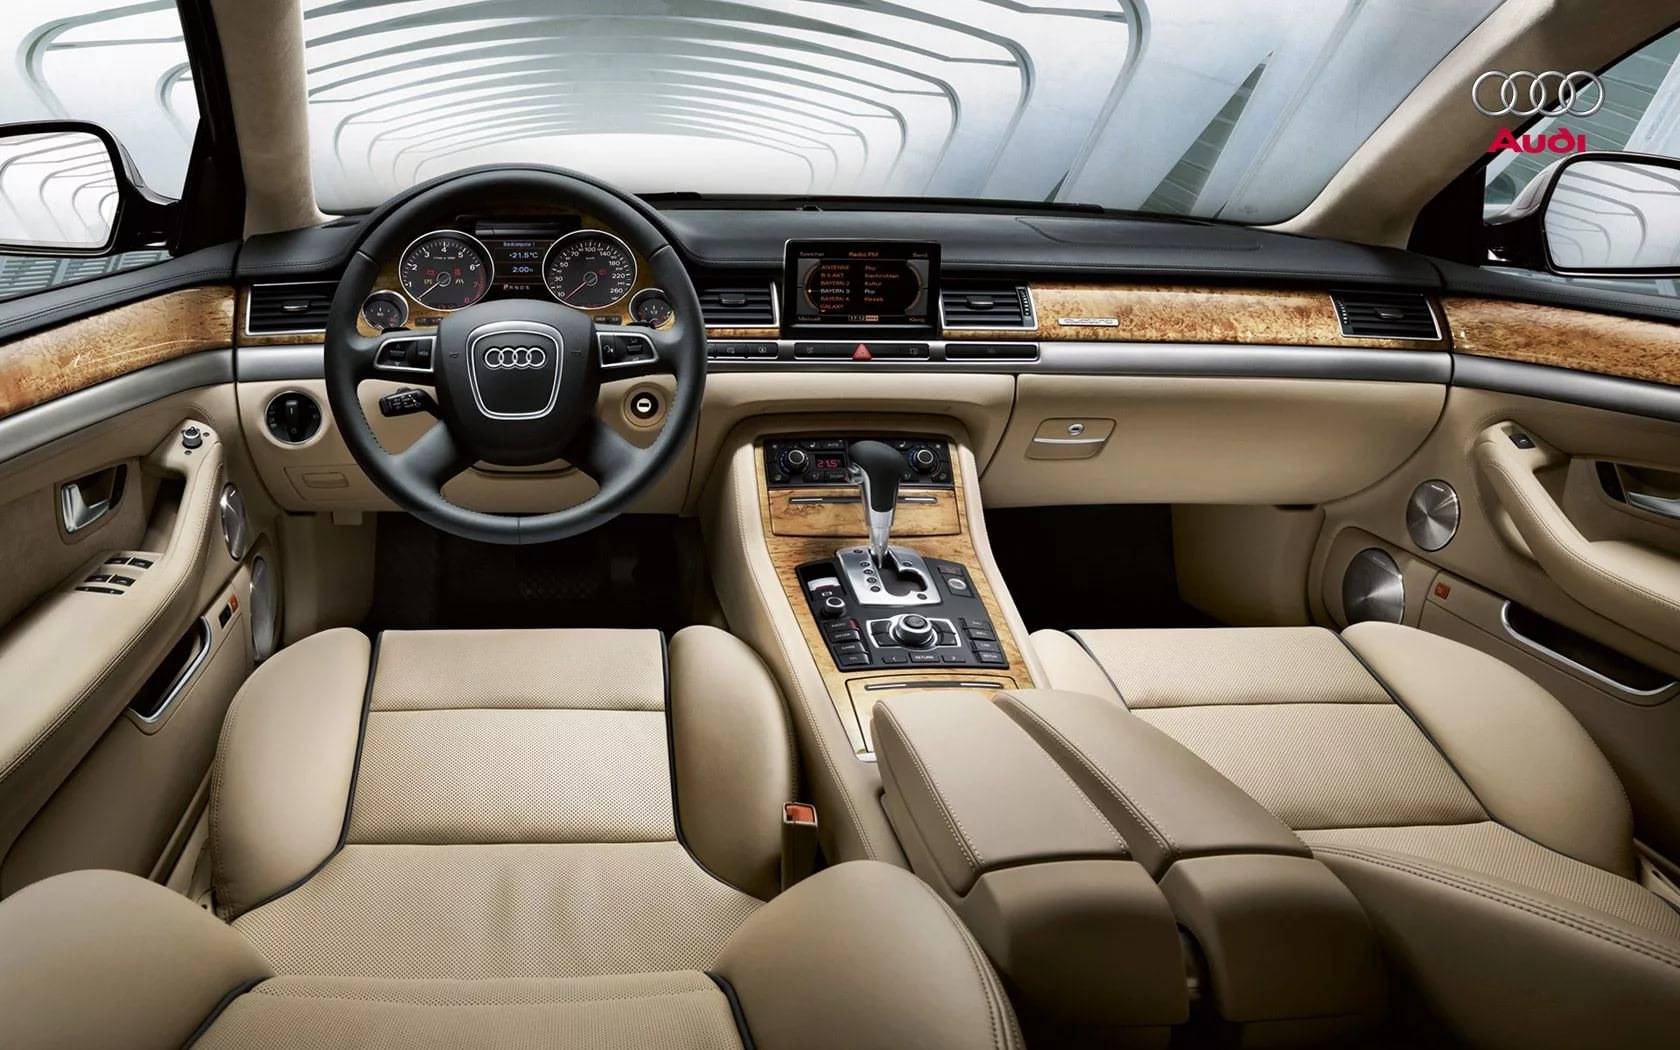 Дорогое удовольствие: обзор Audi A8 (D4)